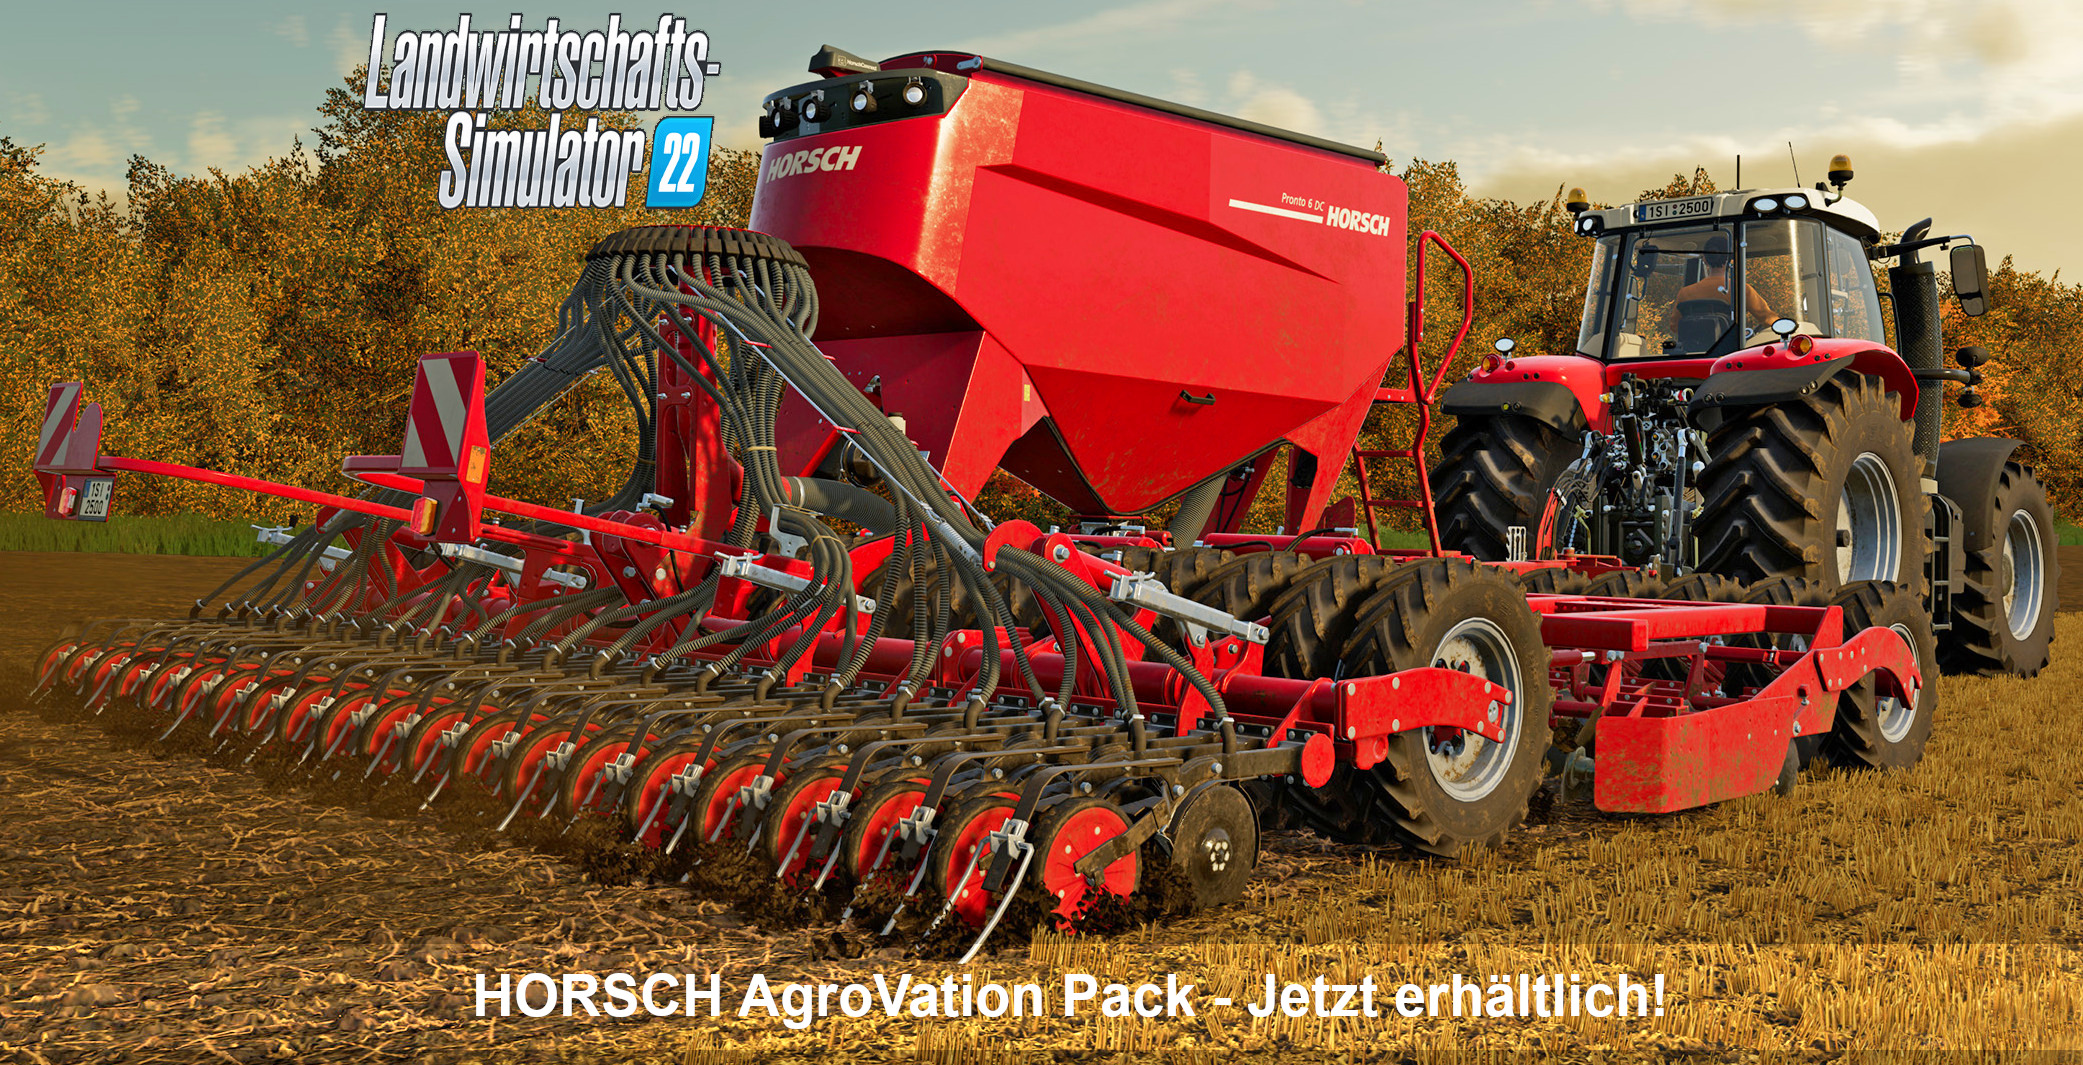 Landwirtschafts-Simulator 22 Horsch AgroVation Pack: Von der Realität in  die digitale Welt - neue Maschinen und Karte -  News